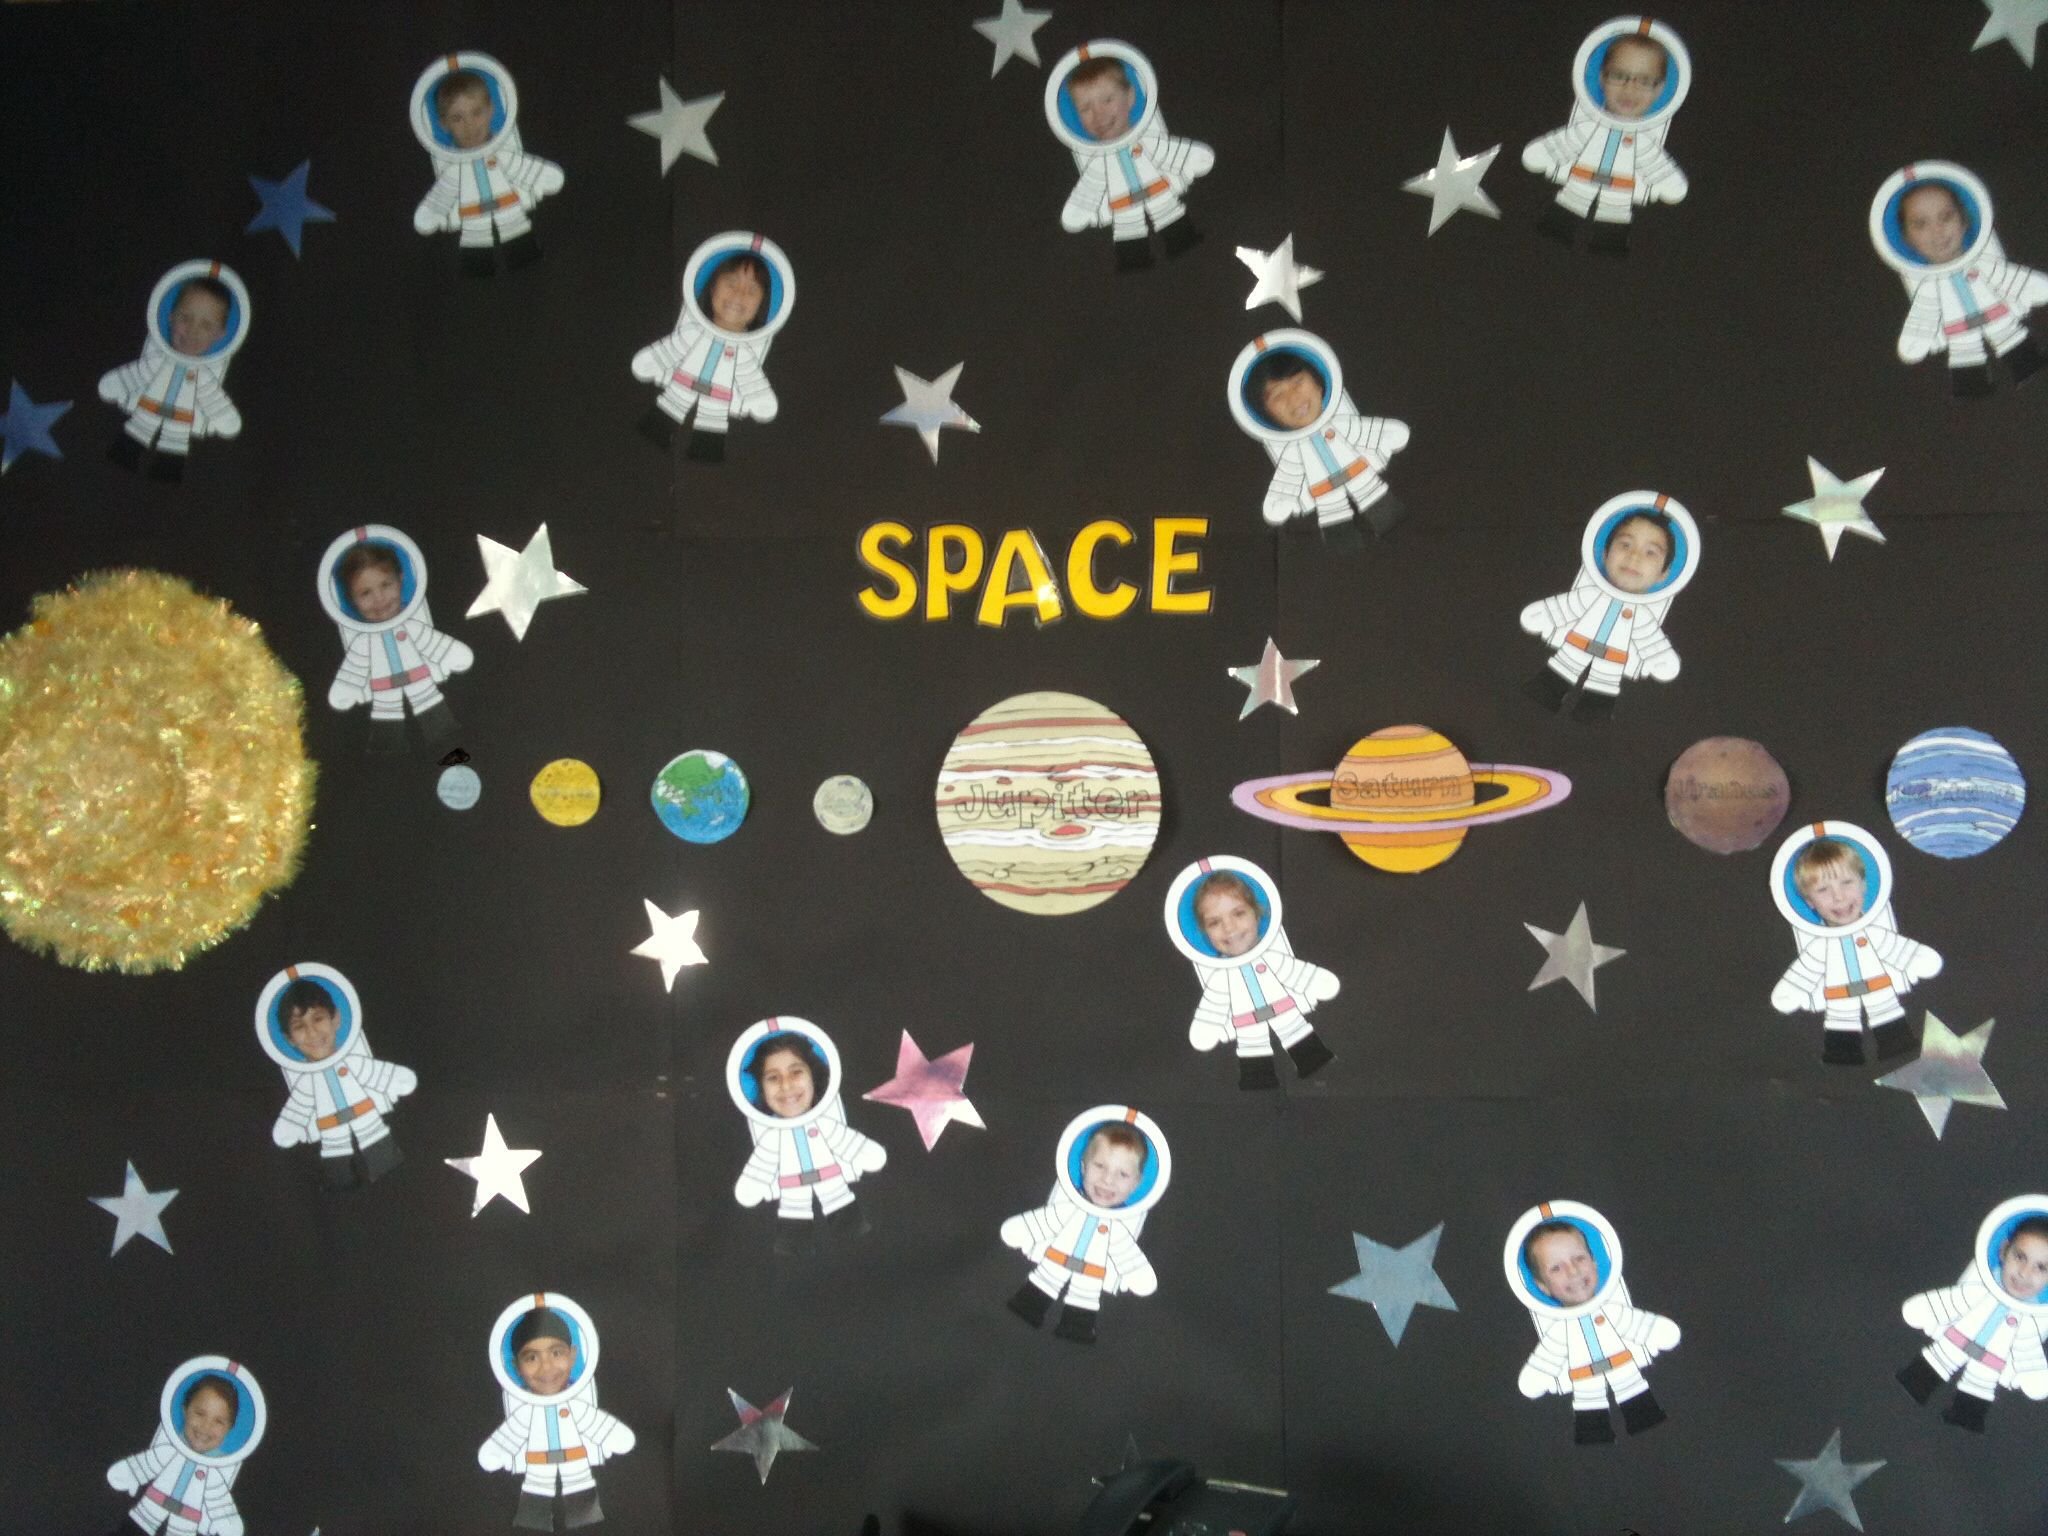 оформление зала на день космонавтики в детском саду